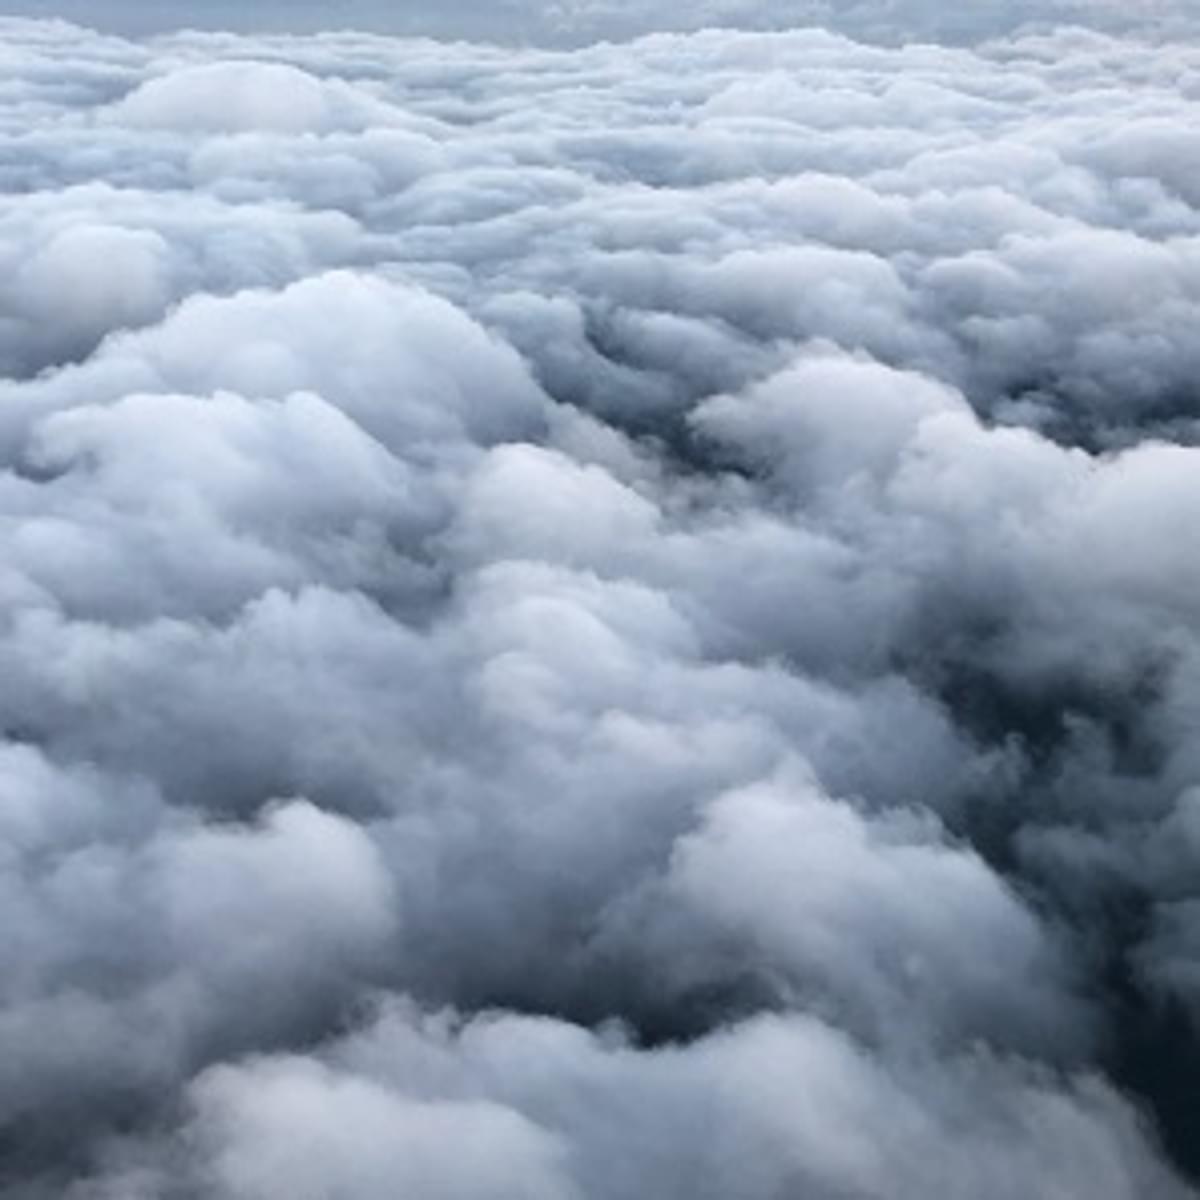 Ruim een kwart van de Nederlandse vindt dataopslag in de cloud eng image